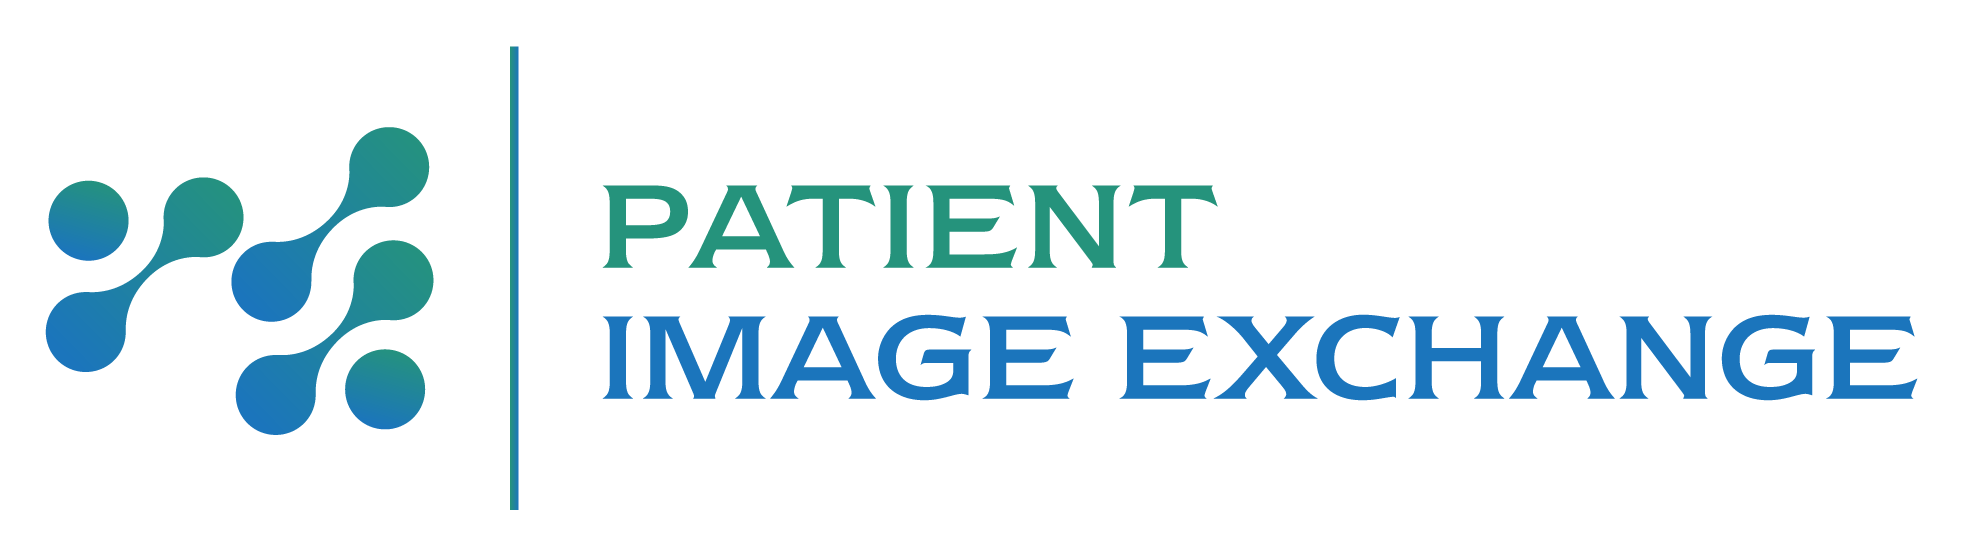 Patient Image Exchange